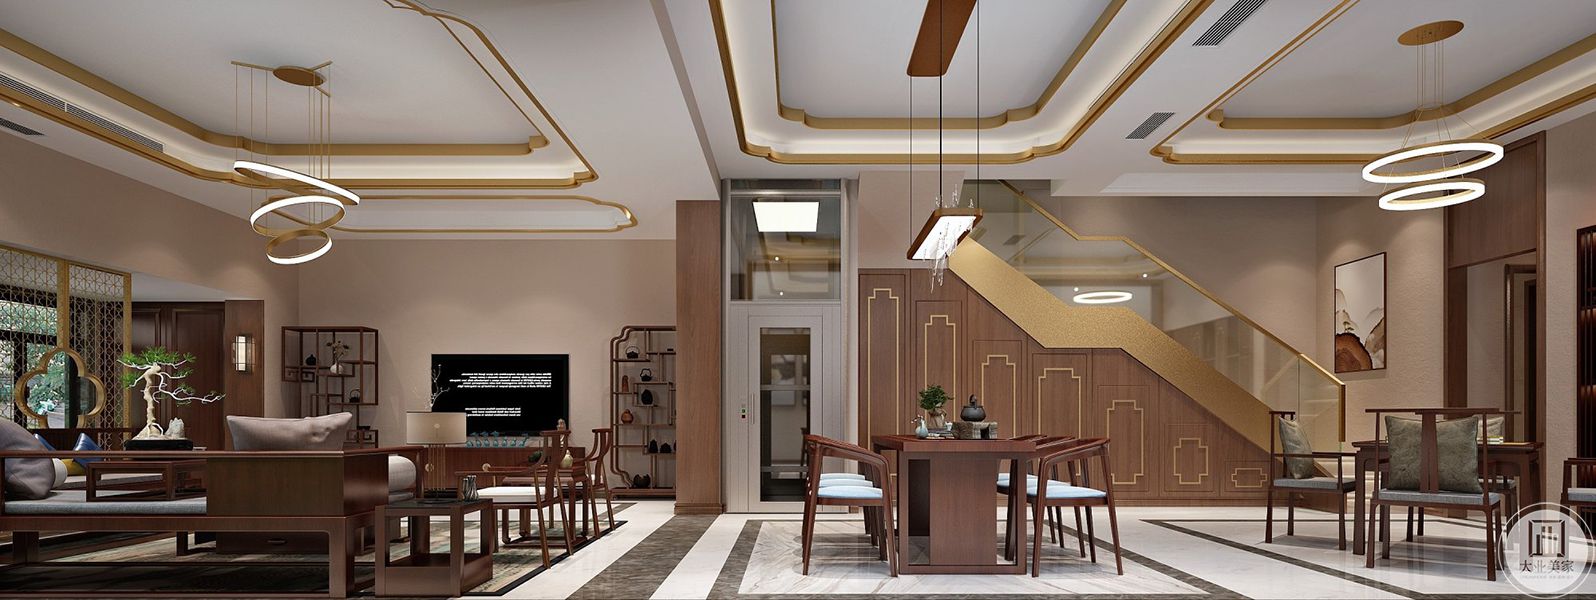 地下室1欧式风格装修效果图  接待区和茶室用于主人平时和家人以及朋友的休闲，采用了实木家具，古典精美